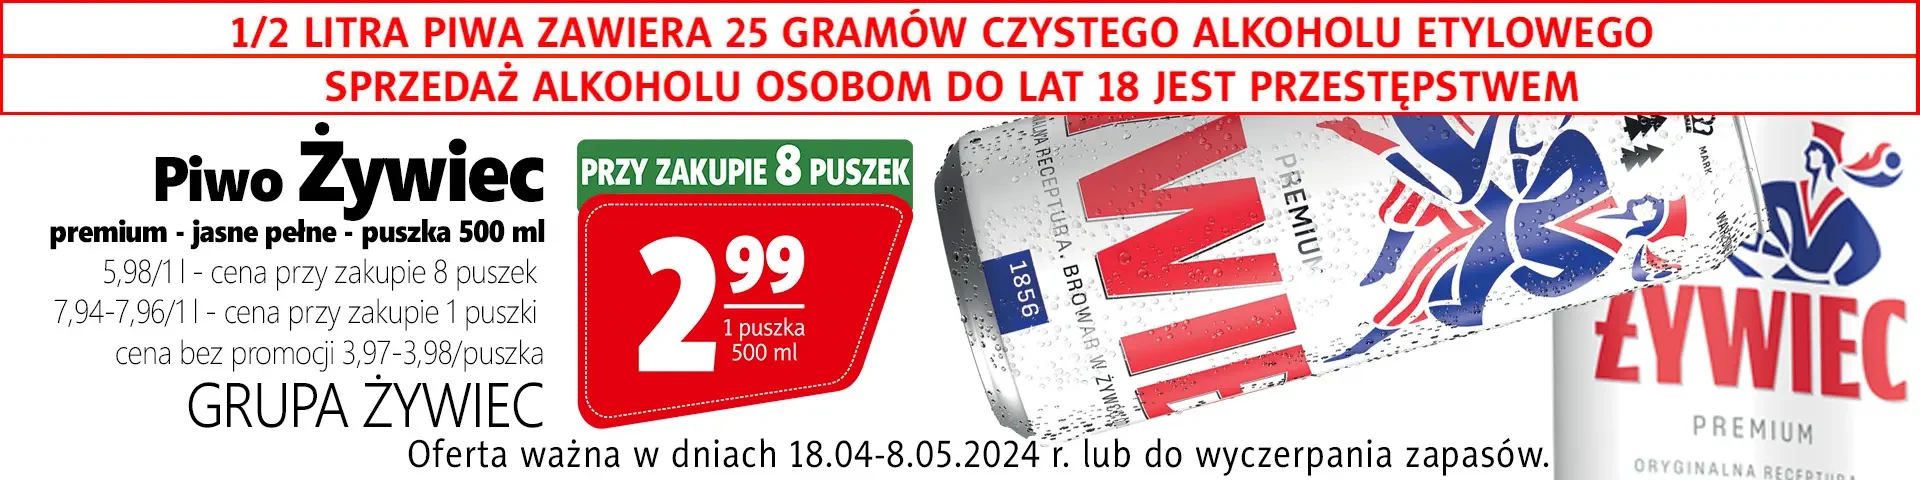 billboard_18_04_8_05_2024_pwio_zywiec_jasne_pelne_GRUPA_ZYWIEC